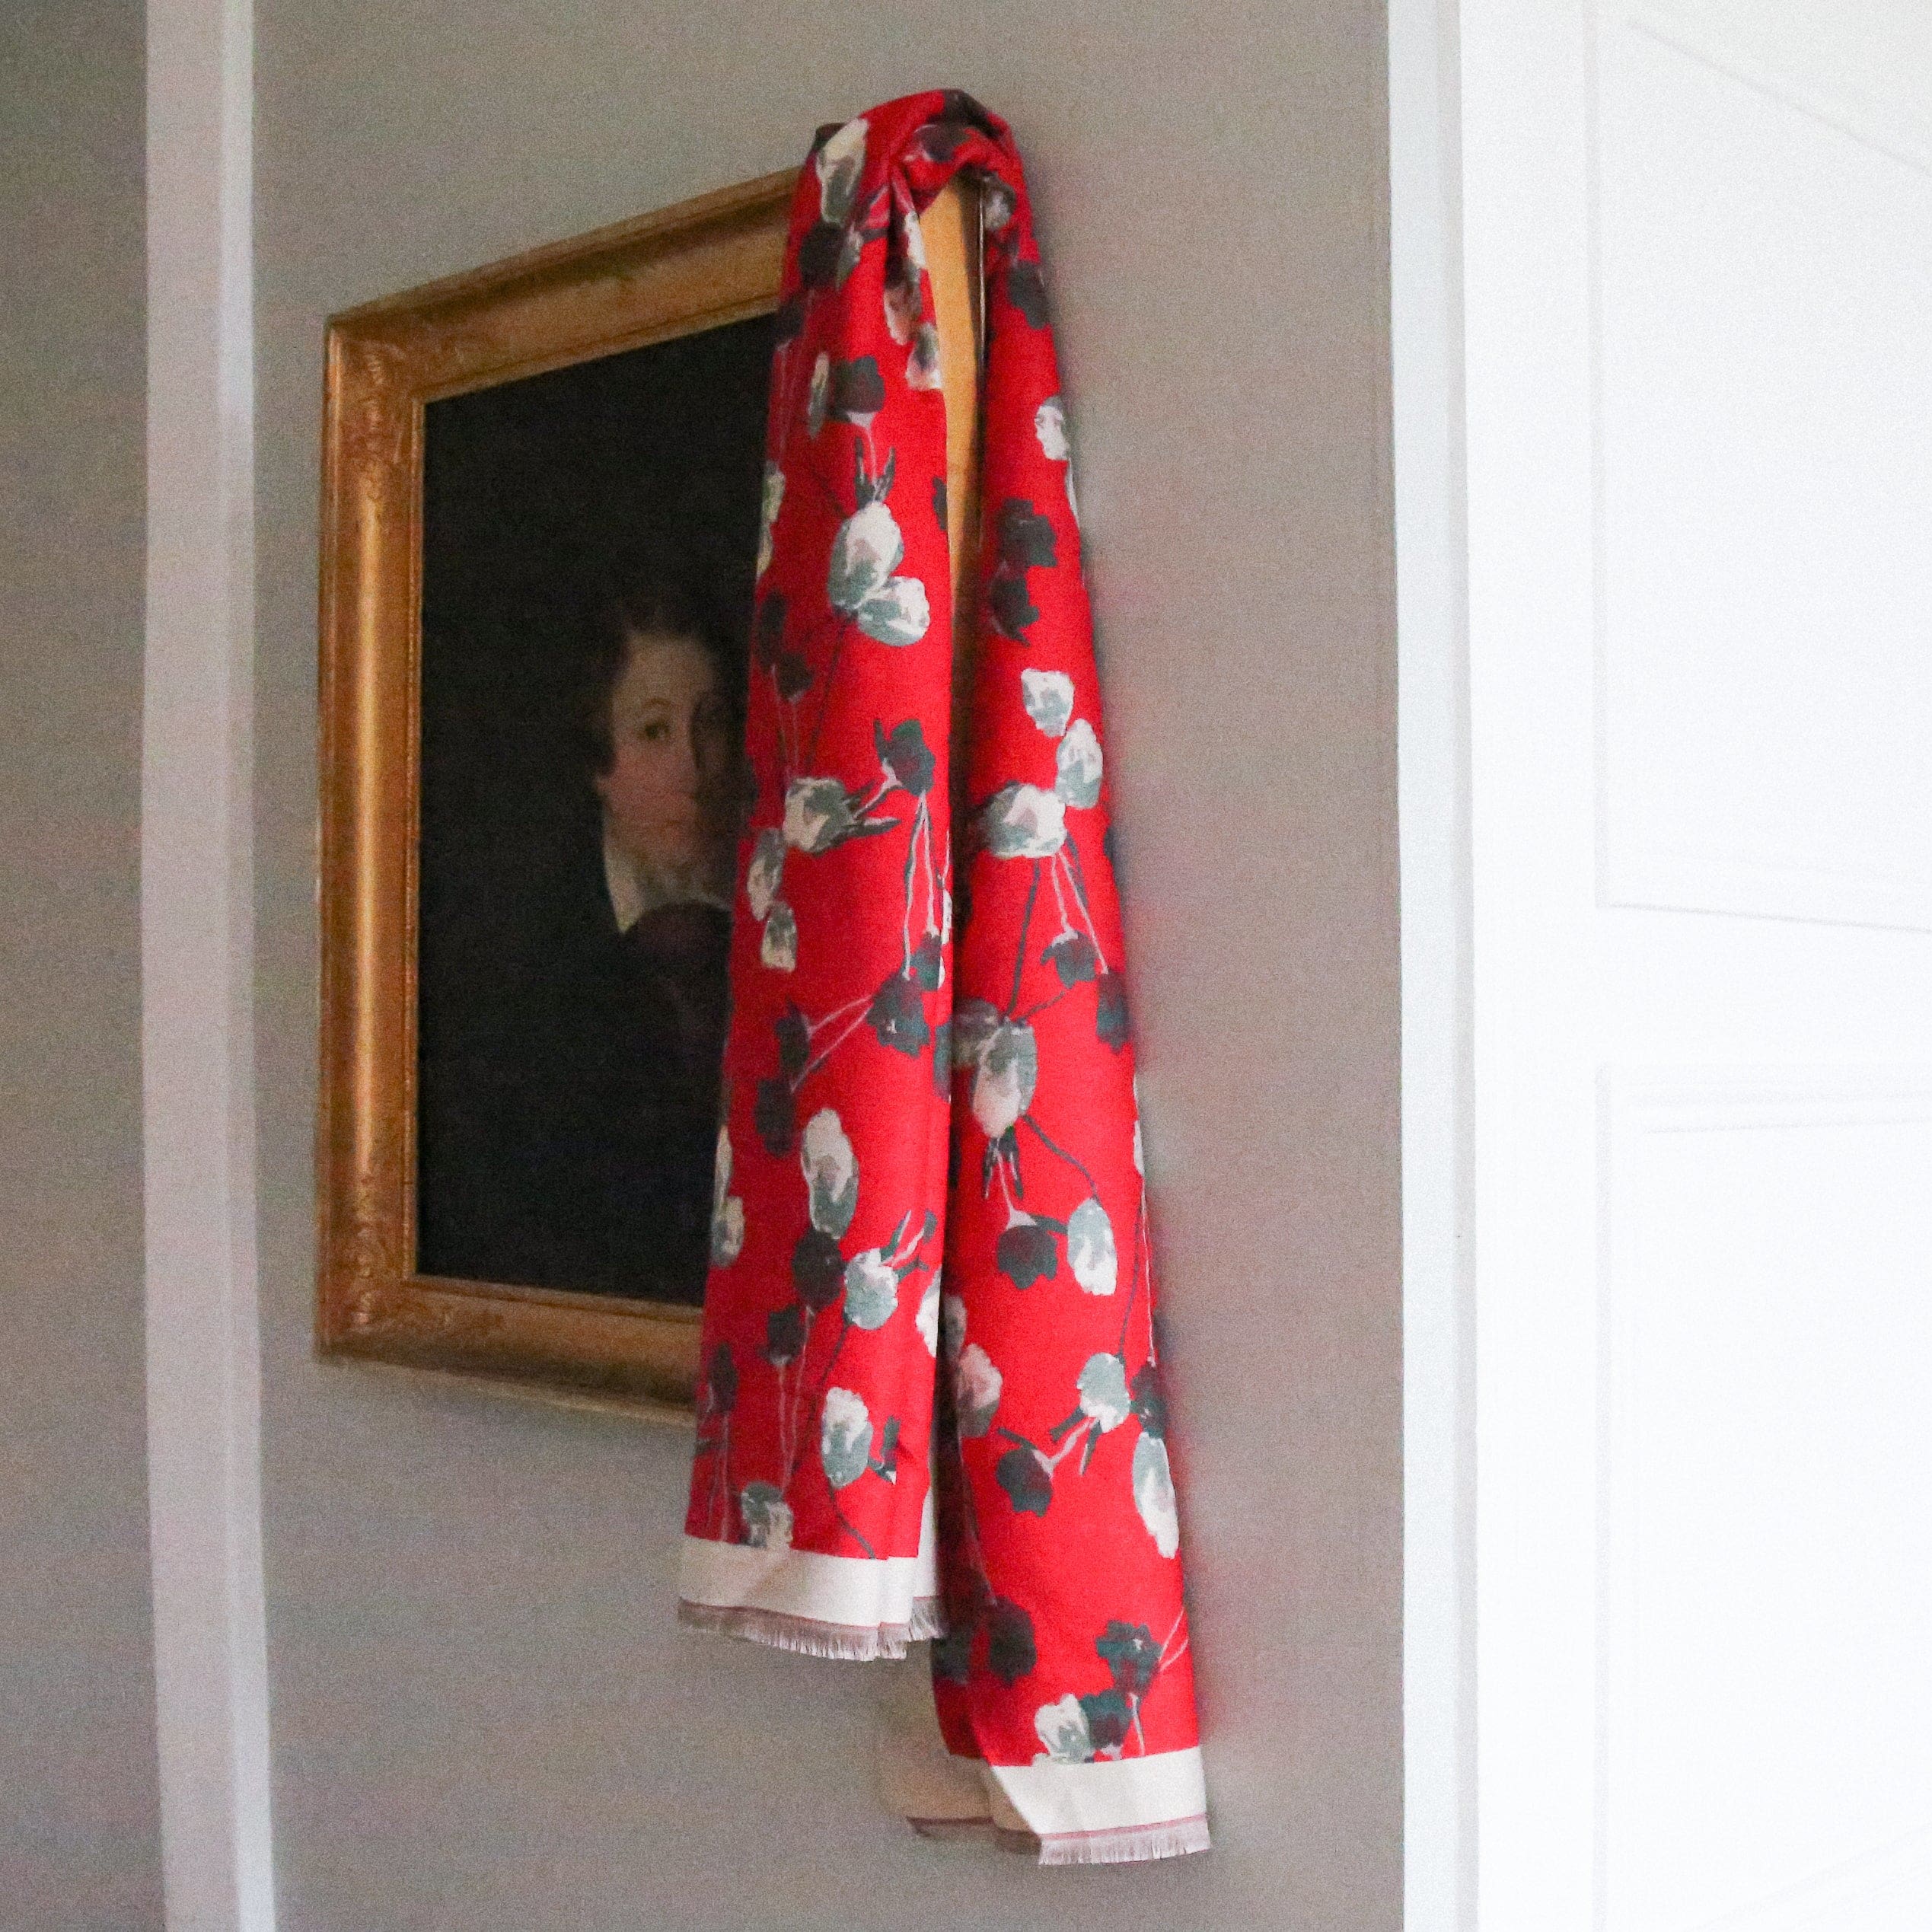 shawl Marie de Medici - shawl